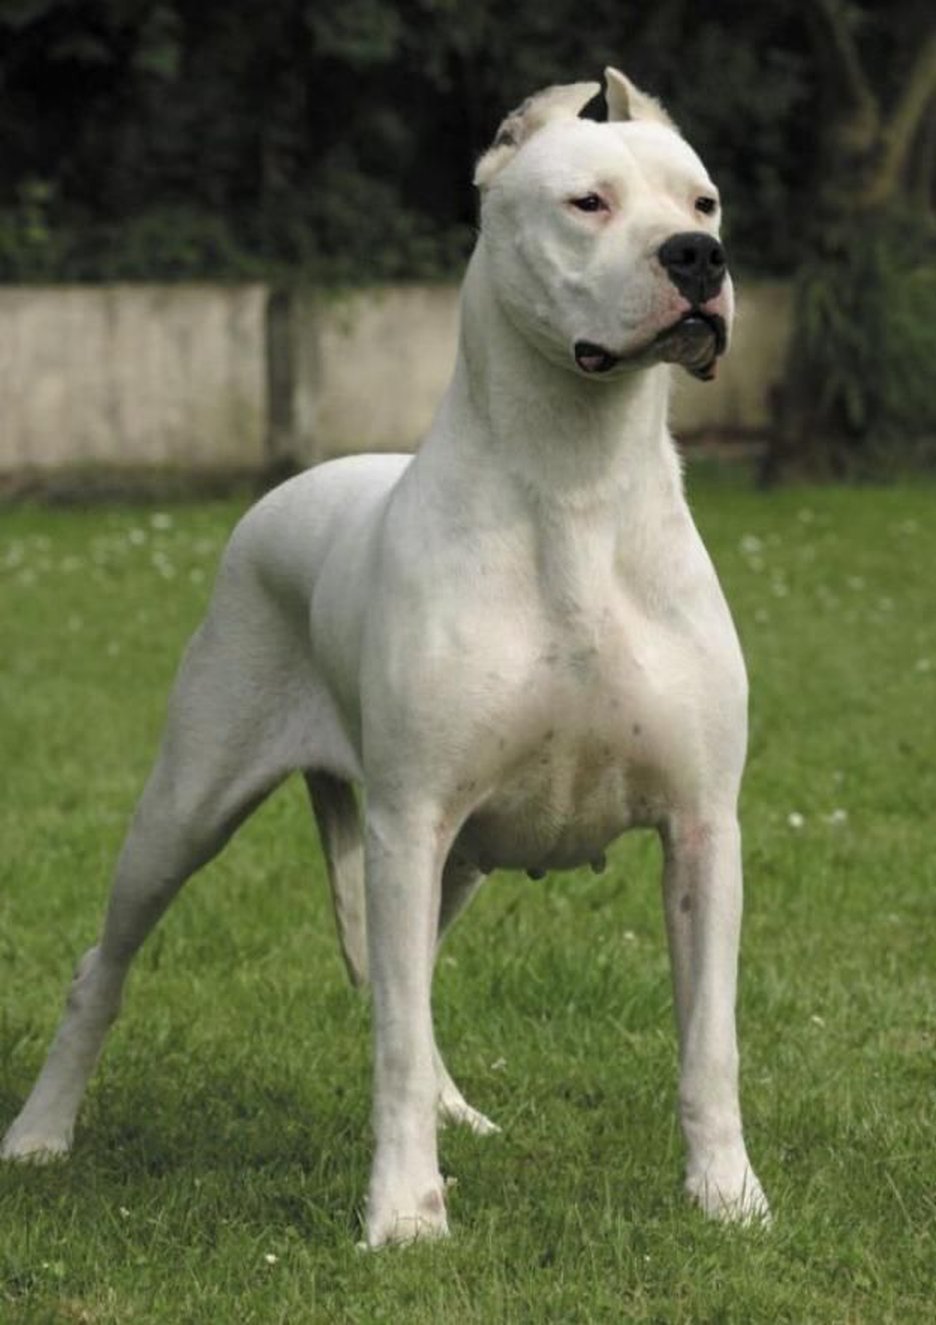 Secondary image of Bully Kutta dog breed